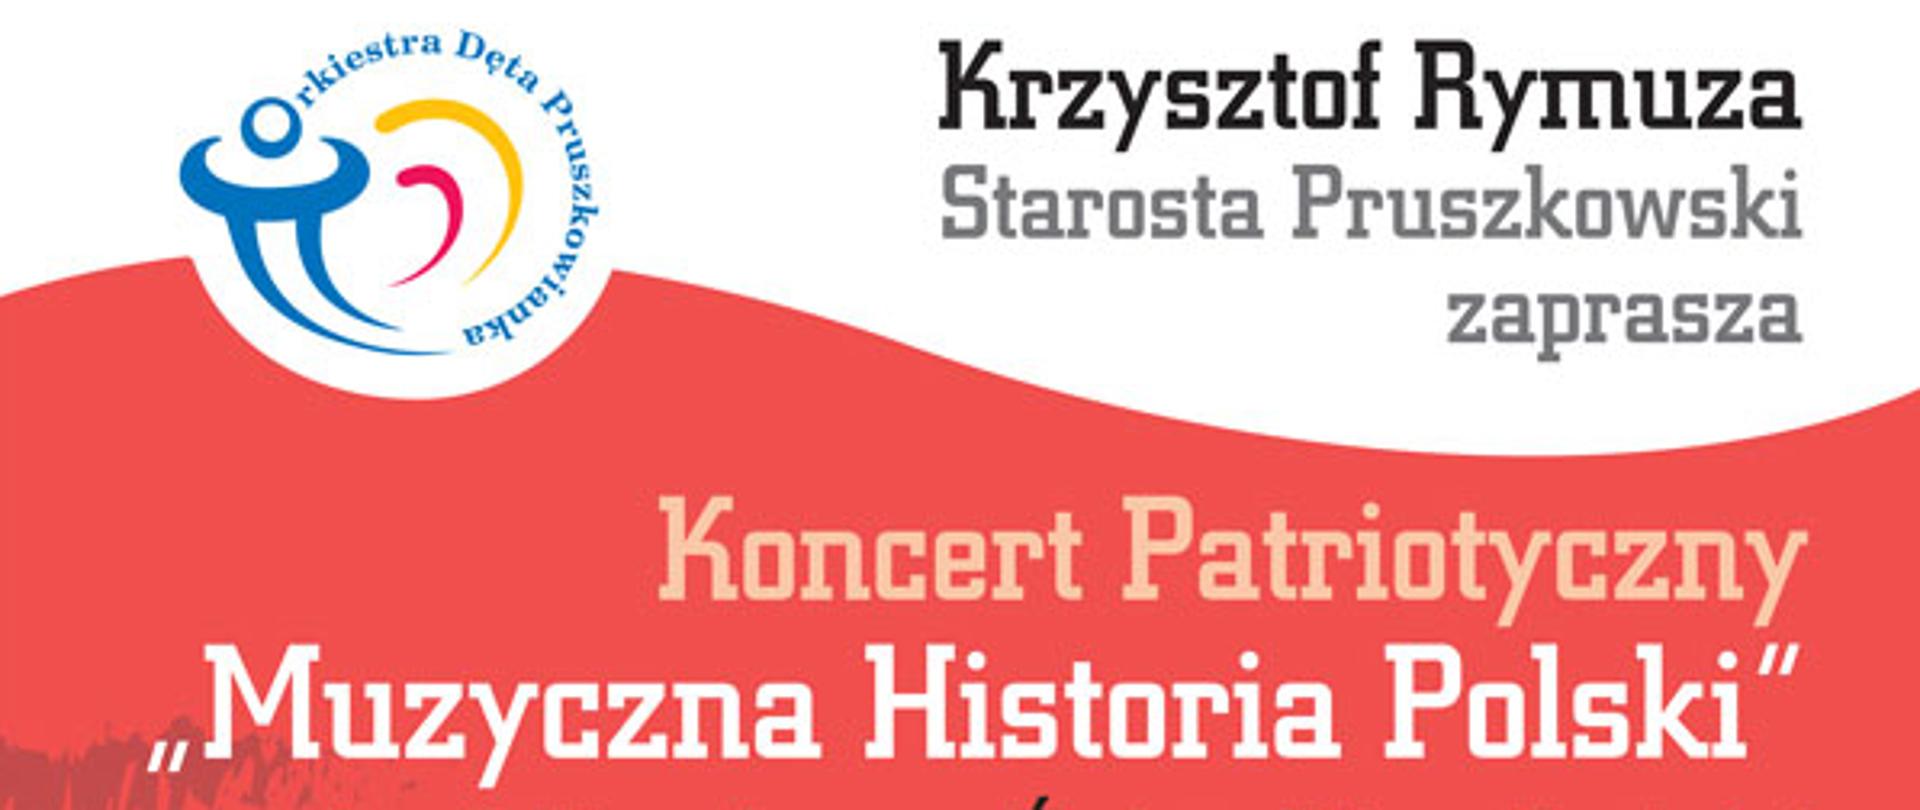 11 listopada - plakat Pruszkowianka 